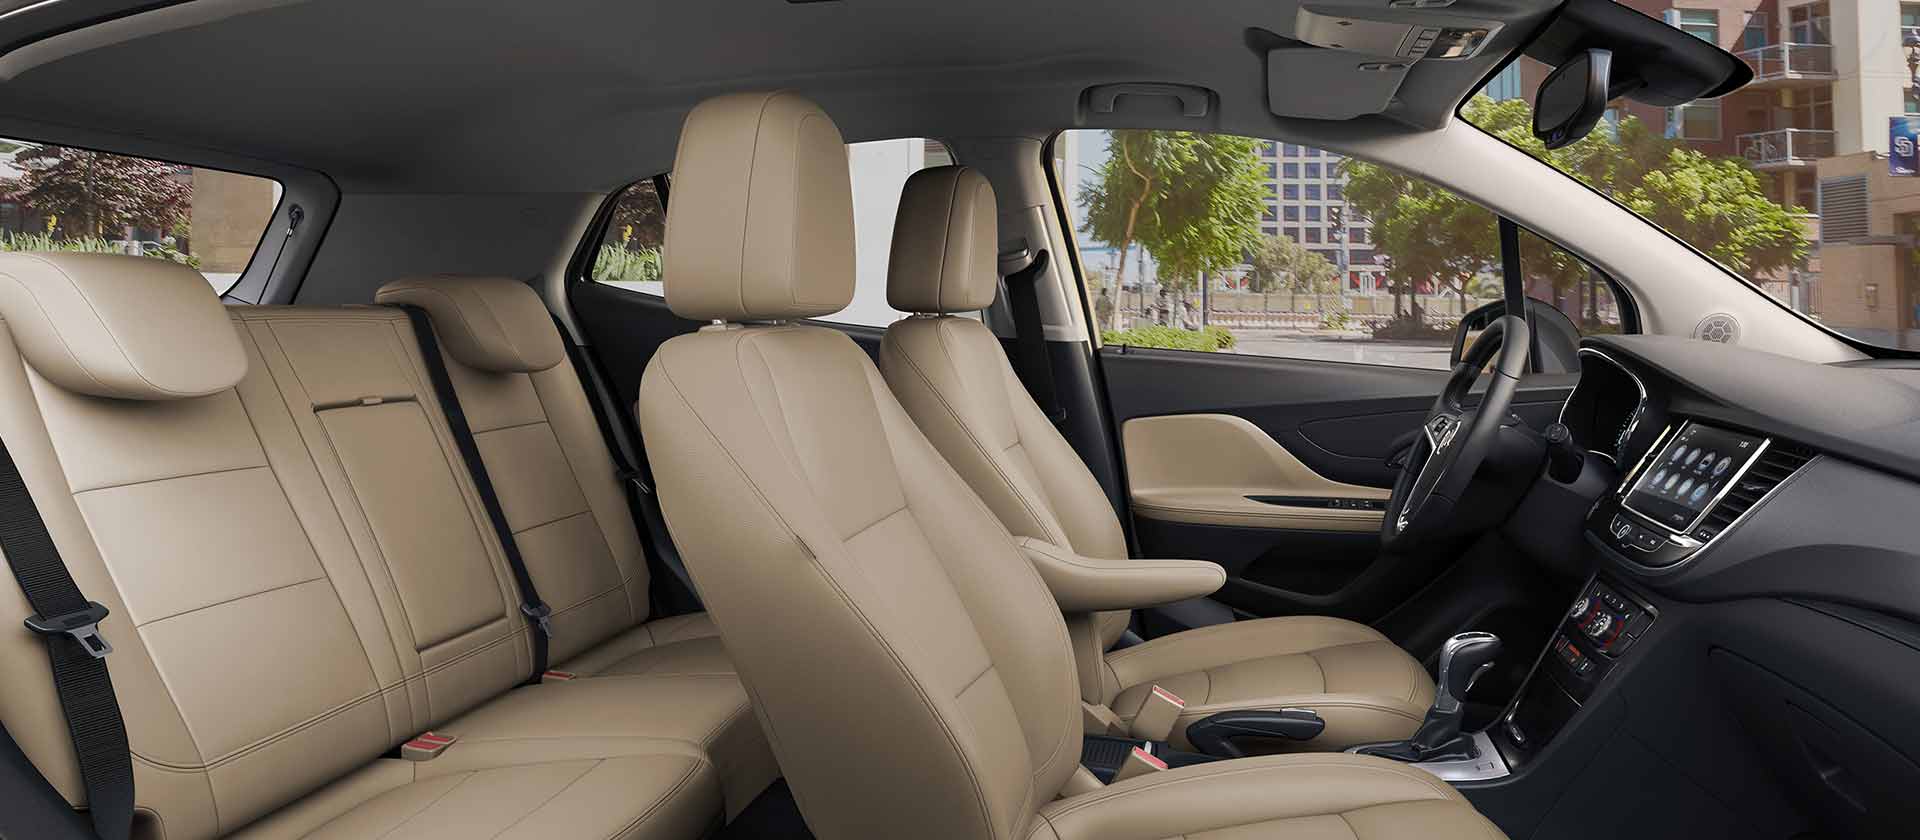 2018 Buick Encore Dashboard Interior